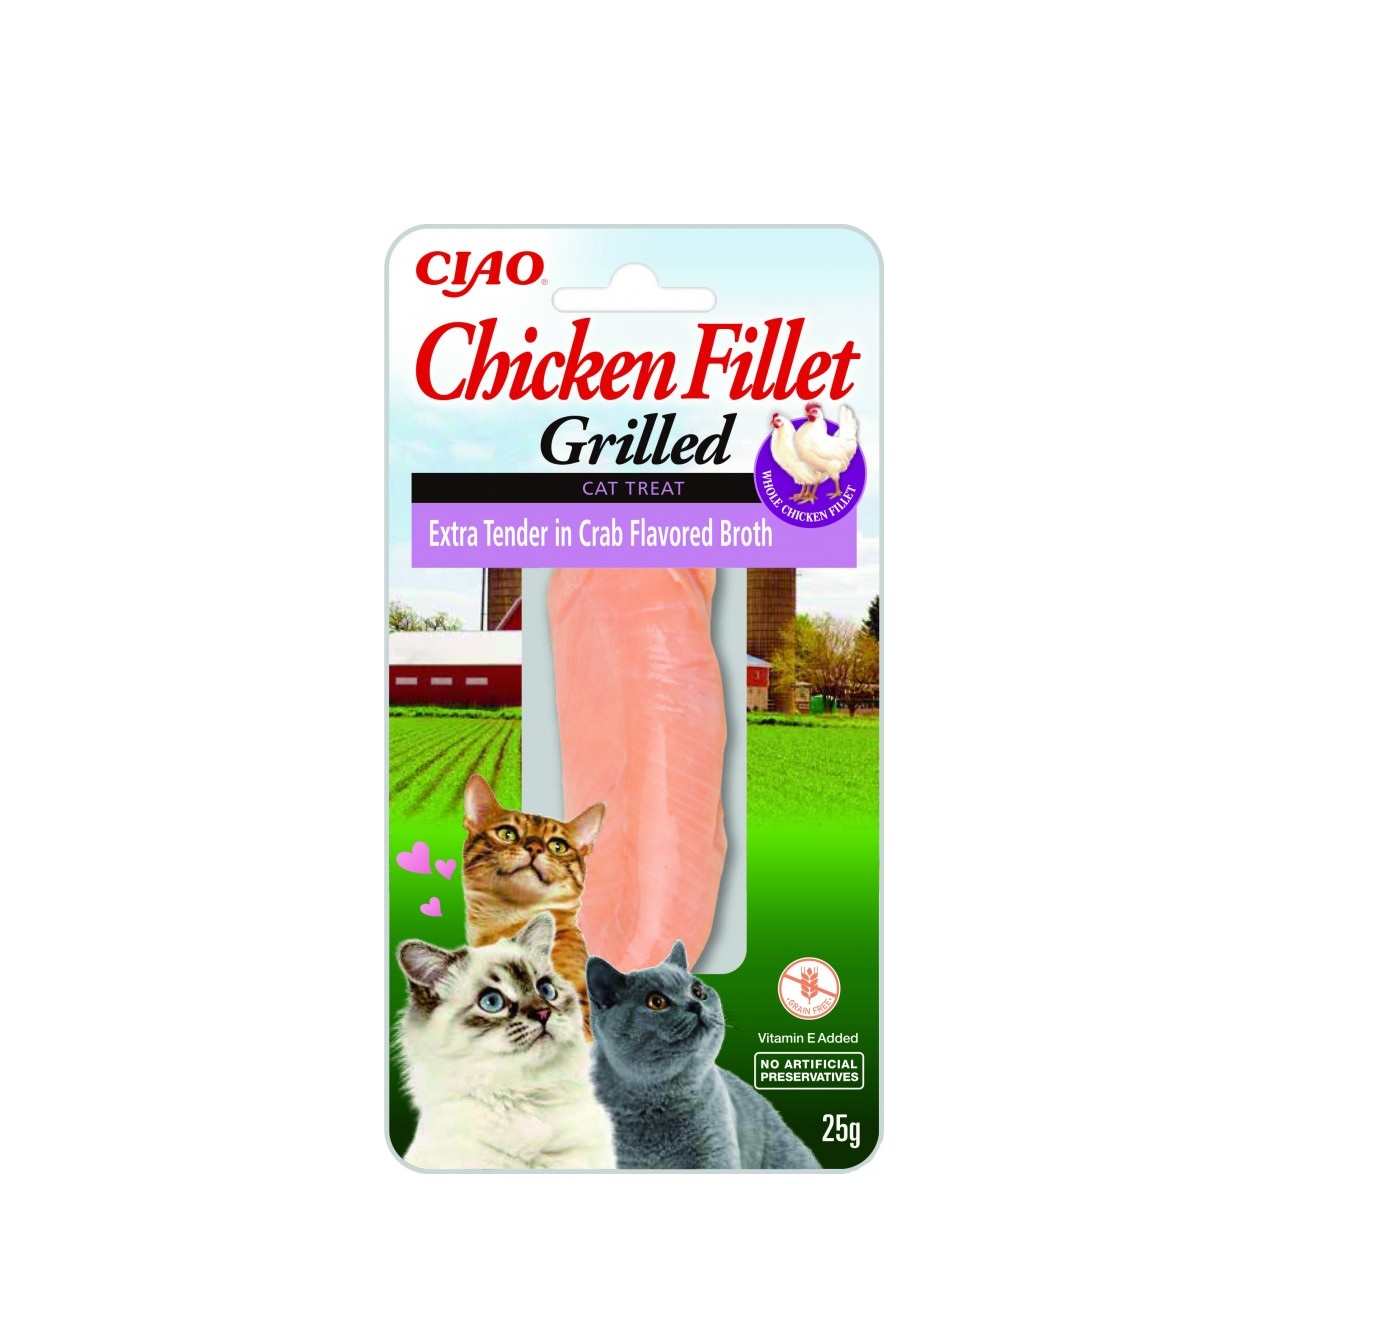 Ciao Grilled Chicken Ekstra delikatne w bulionie o smaku kraba 25g